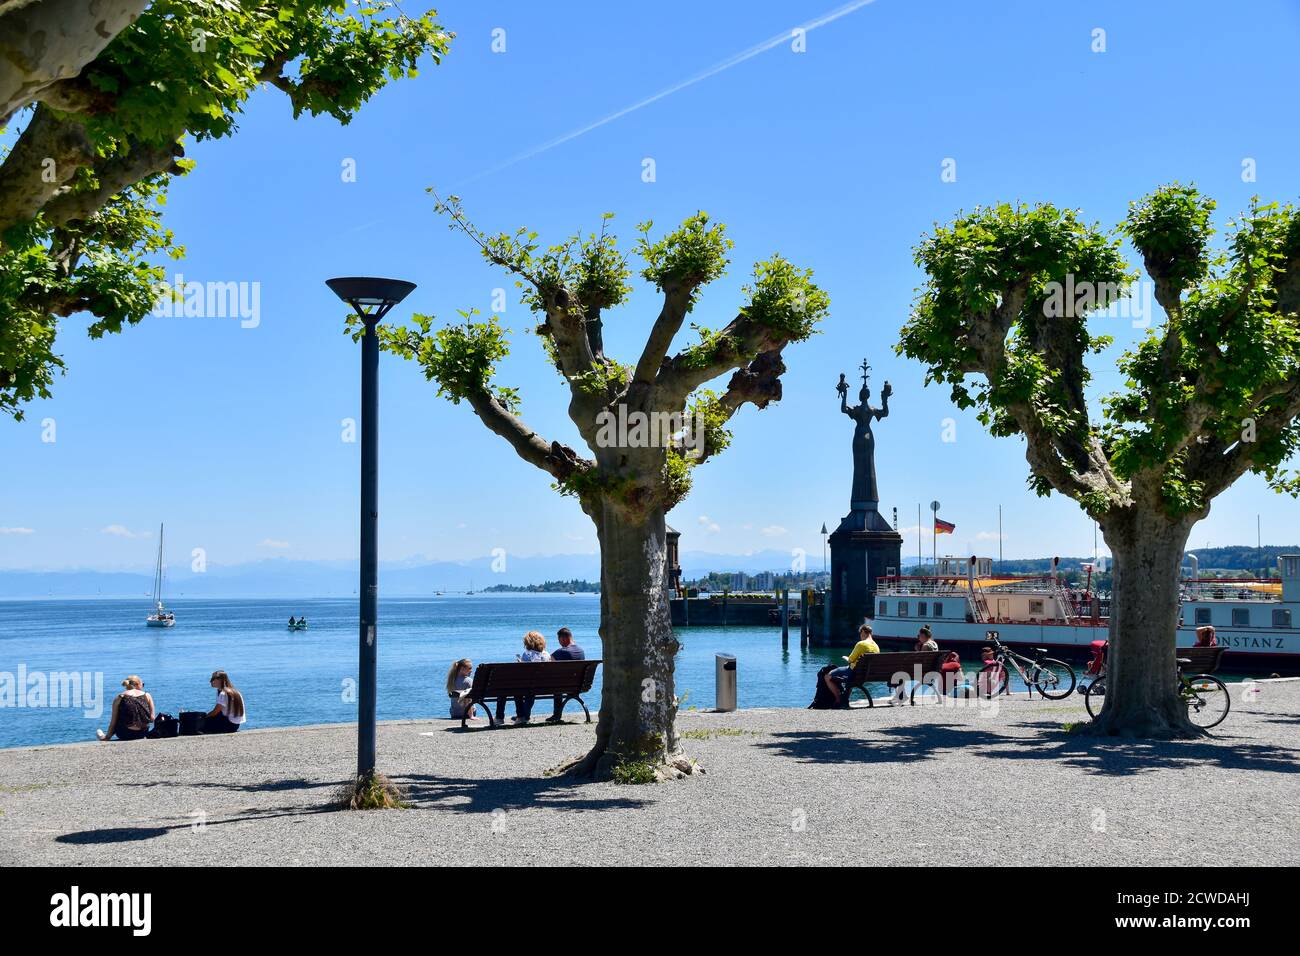 Konstanz, Alemania - 27 de mayo de 2020: Jardín de la ciudad de Constanza con paseo marítimo. Foto de stock